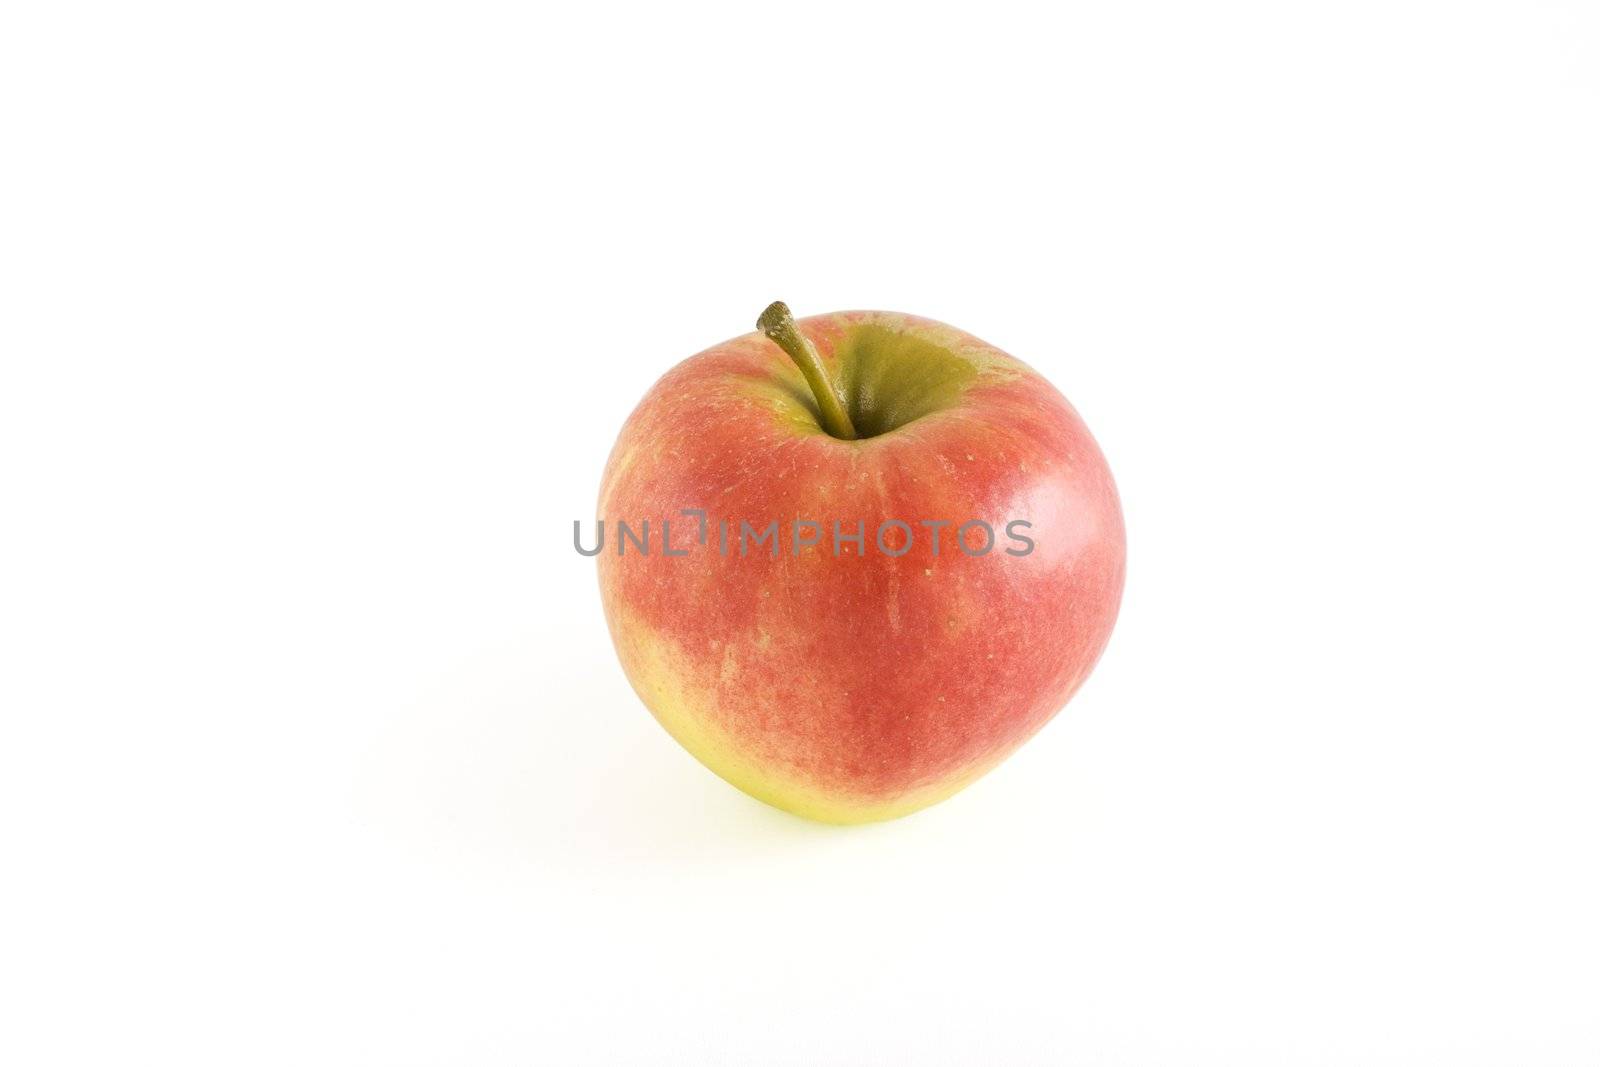 Gala Apple isolated on white background